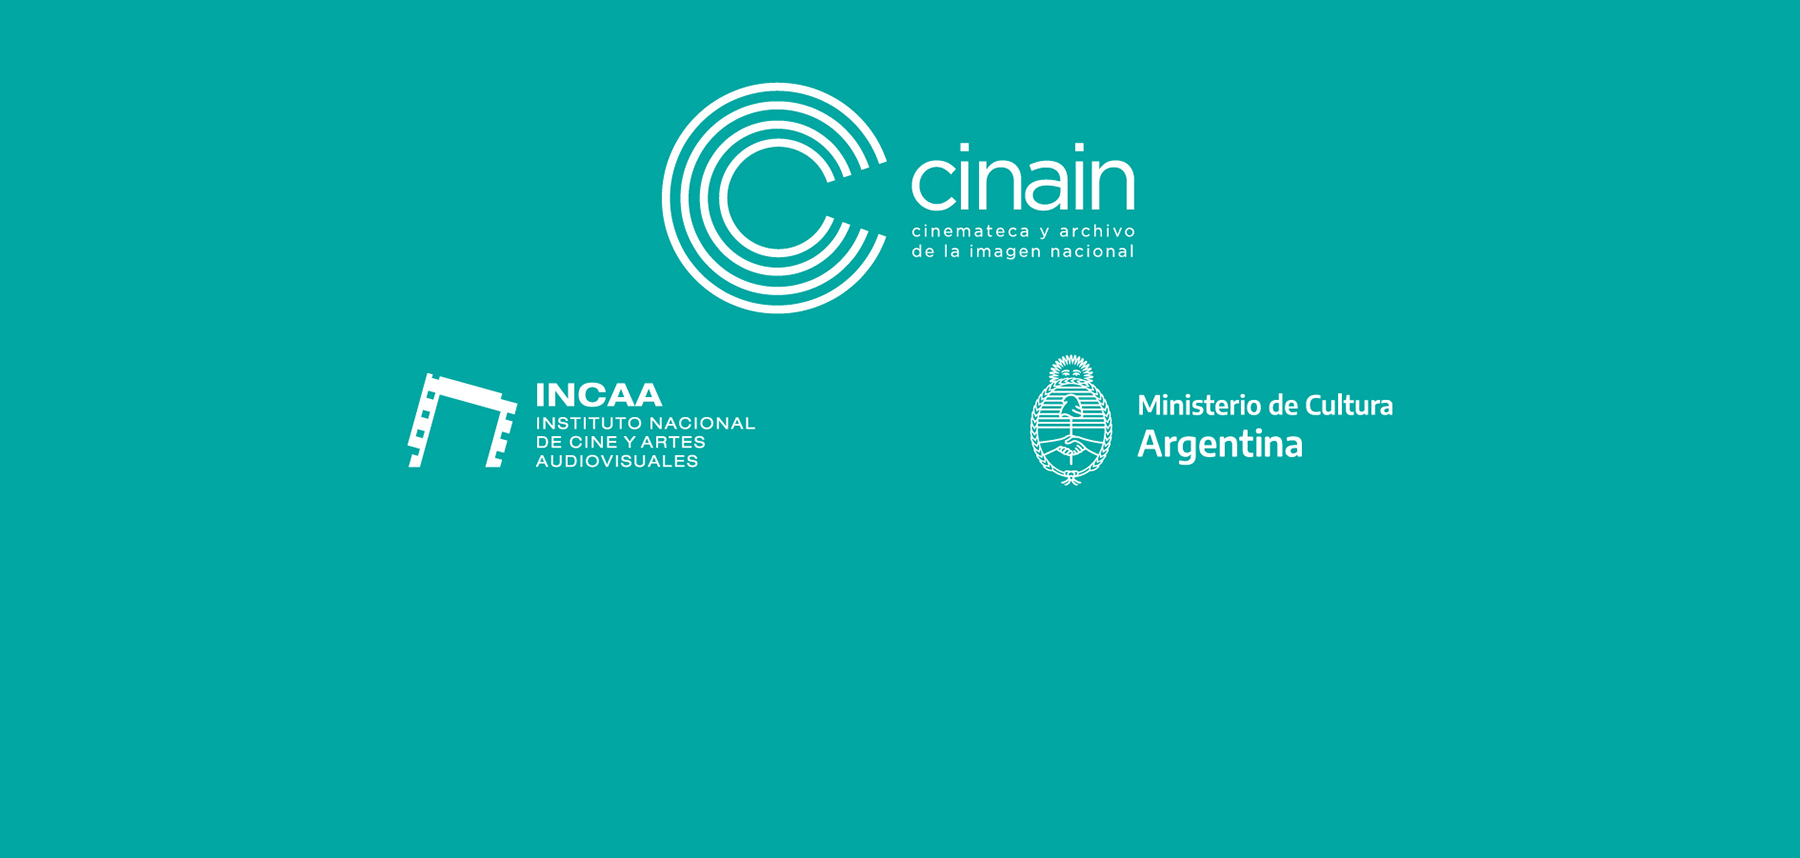 Logo CINAIN, INCAA y MINISTERIO DE CULTURA